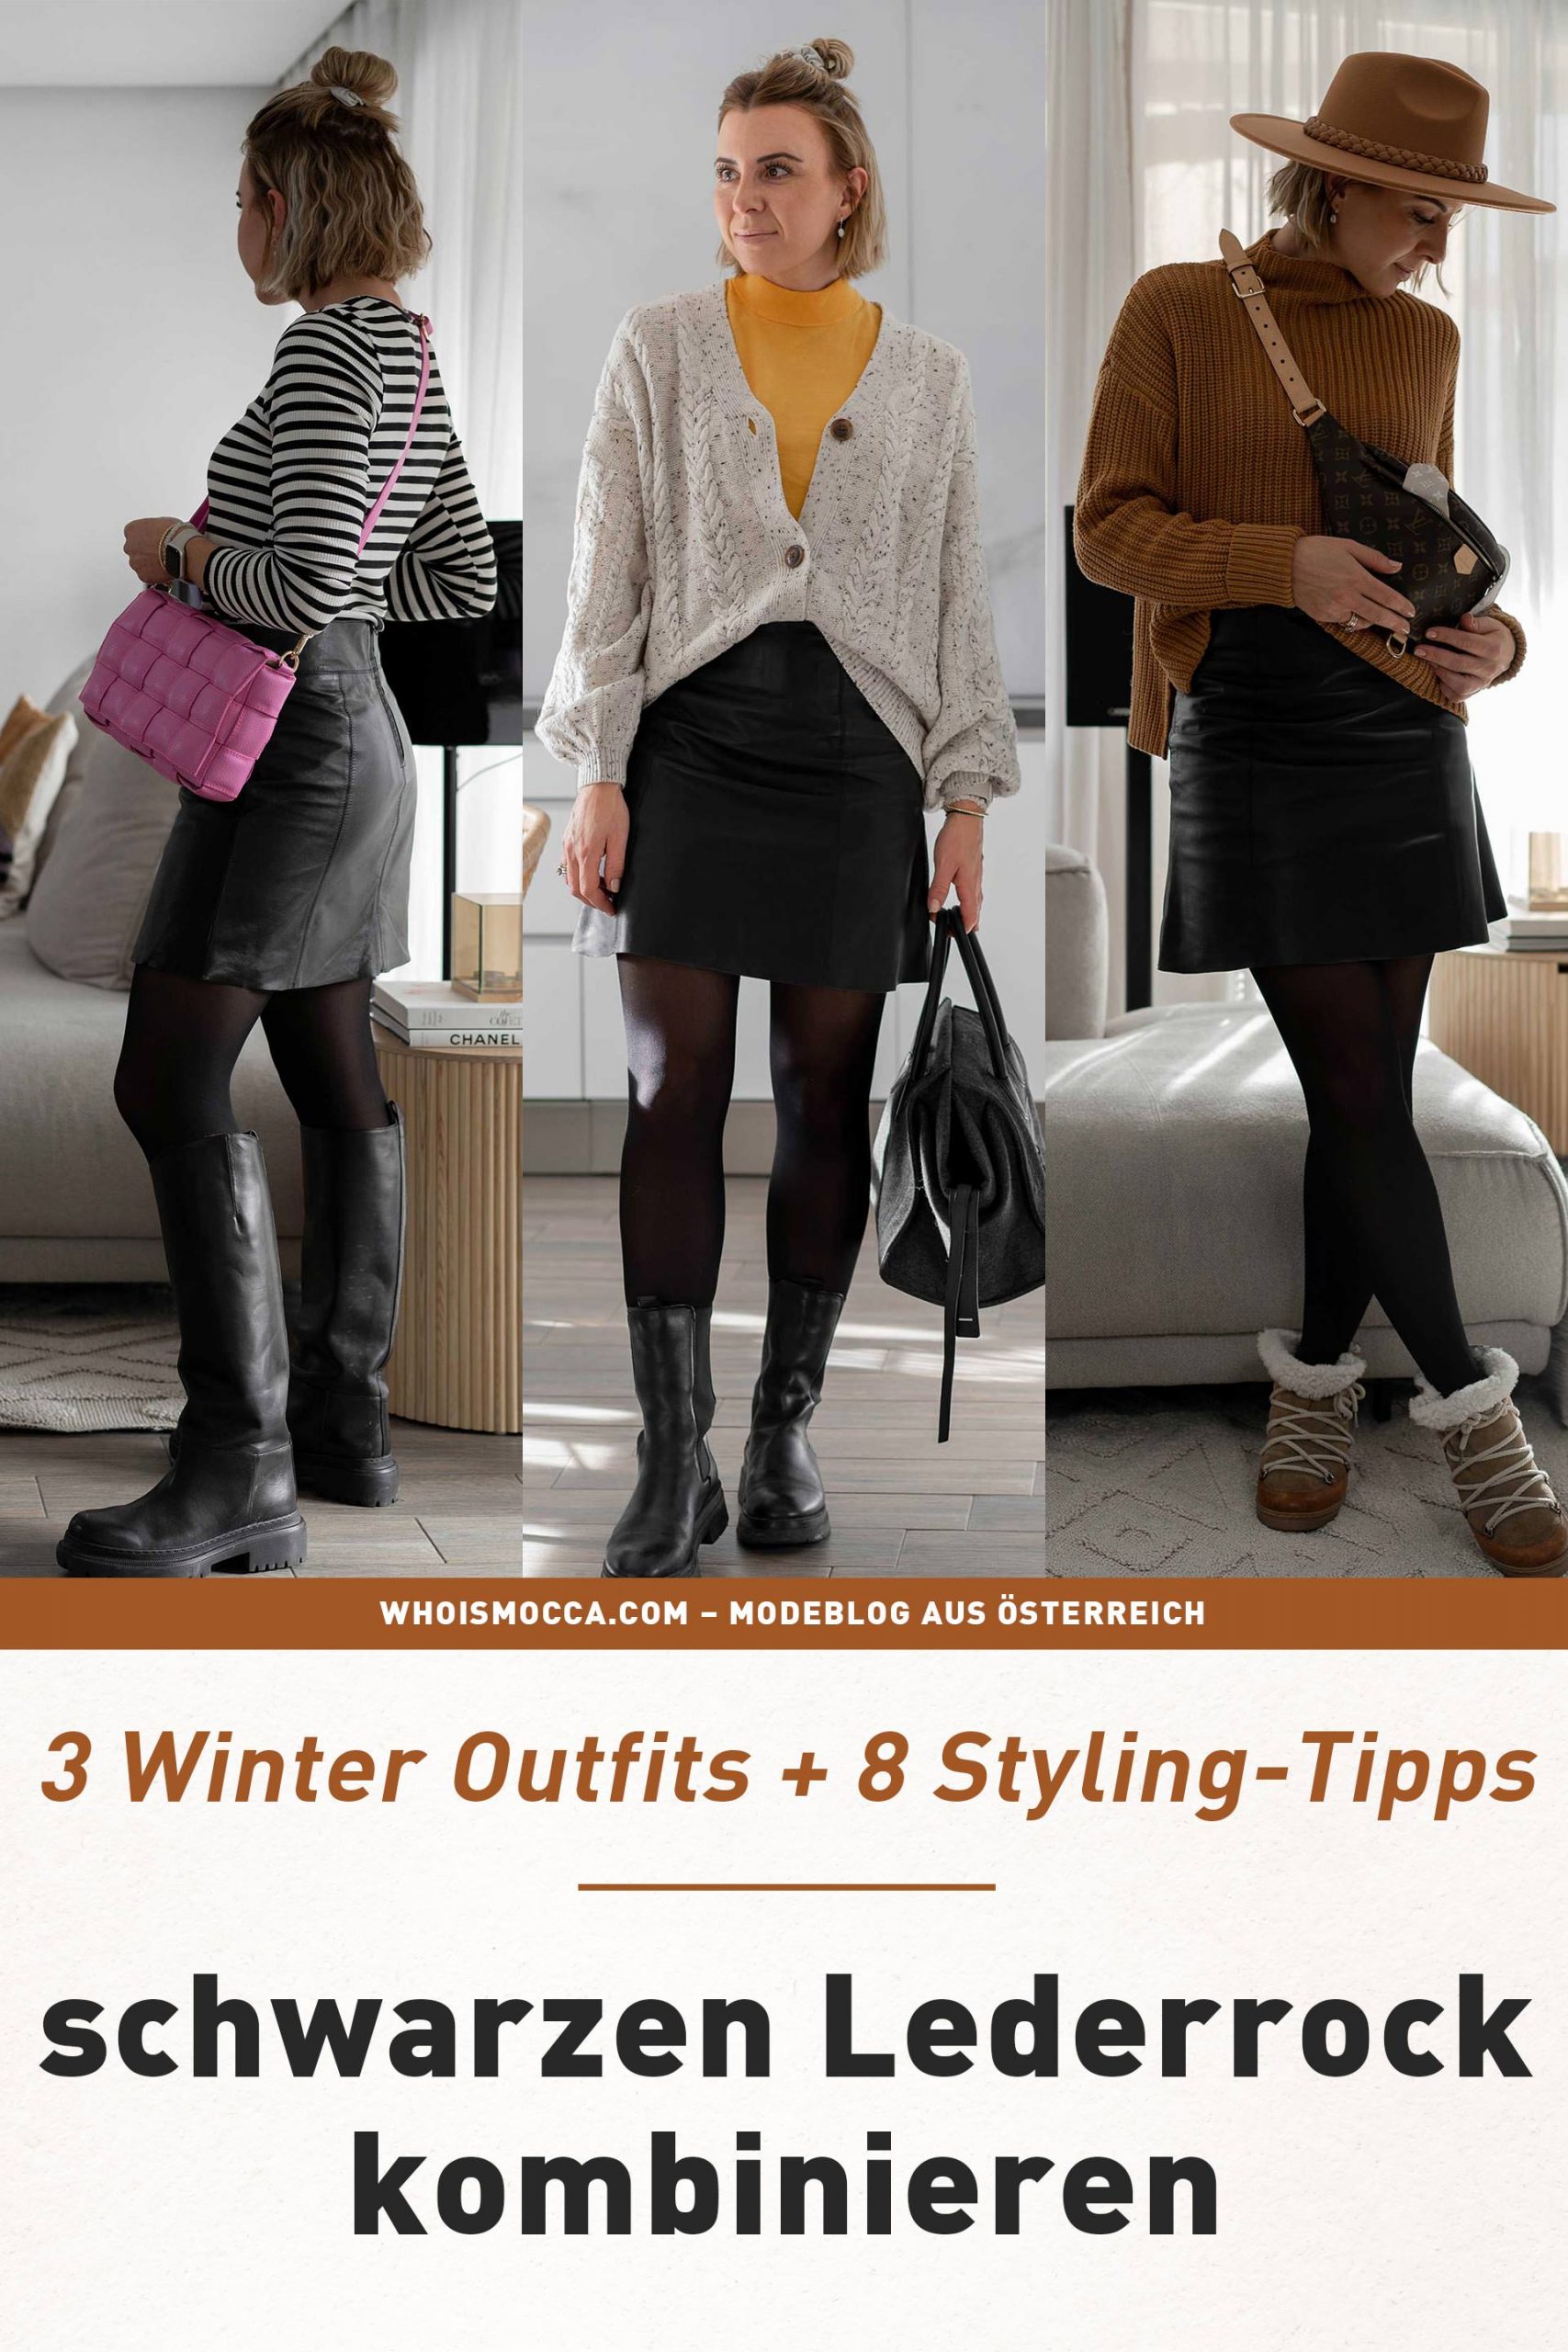 Anzeige. Wie gut du einen schwarzen Lederrock kombinieren kannst, zeige ich dir heute in 3 unterschiedlichen Winter Outfits. www.whoismocca.com